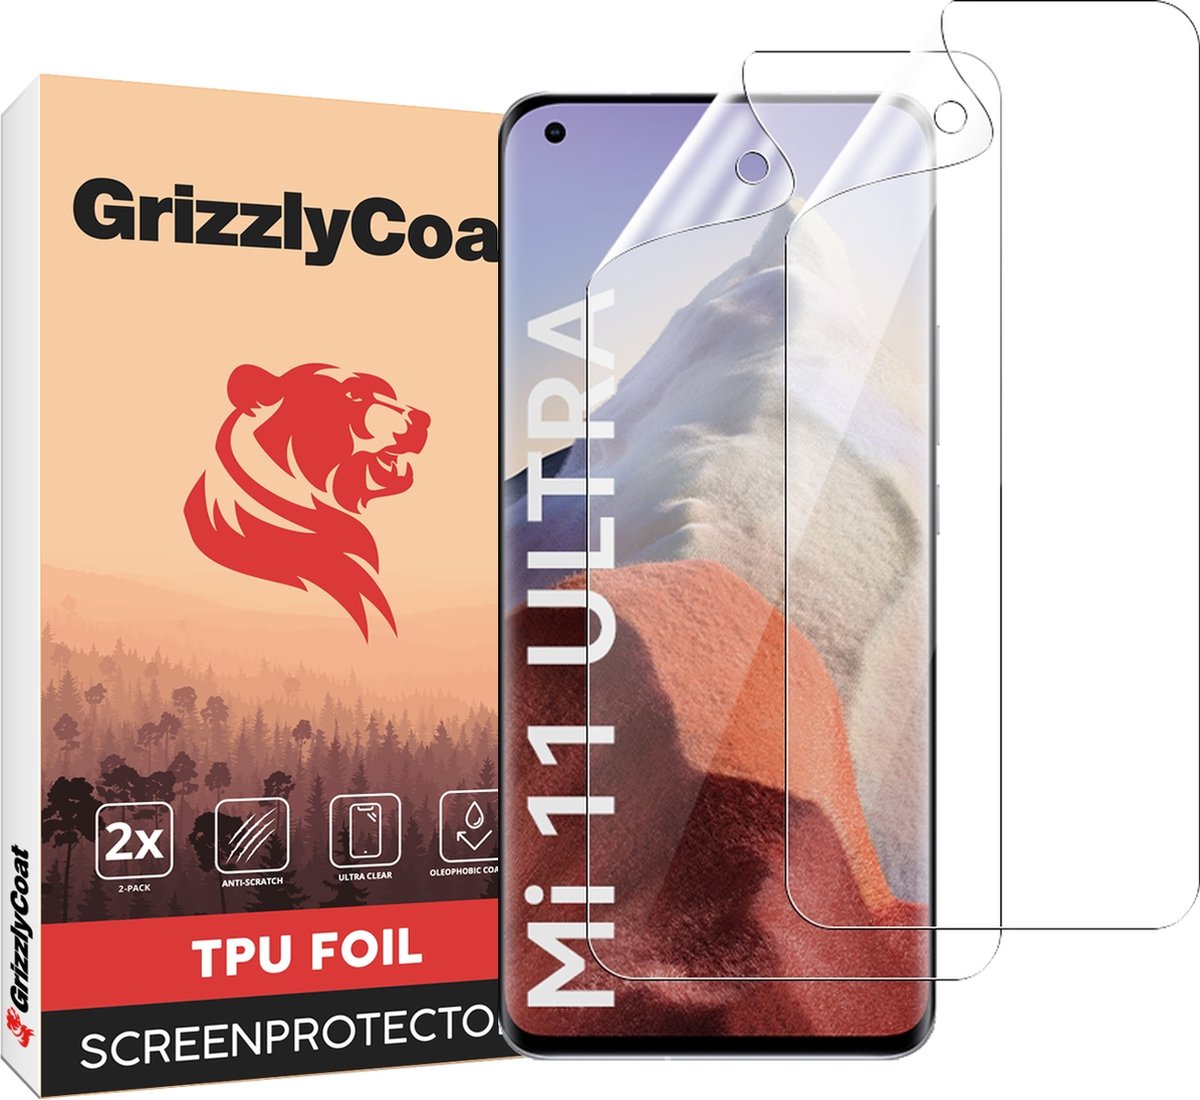 GrizzlyCoat - Screenprotector geschikt voor Xiaomi Mi 11 Ultra Hydrogel TPU | GrizzlyCoat Screenprotector - Case Friendly + Installatie Frame (2-Pack)